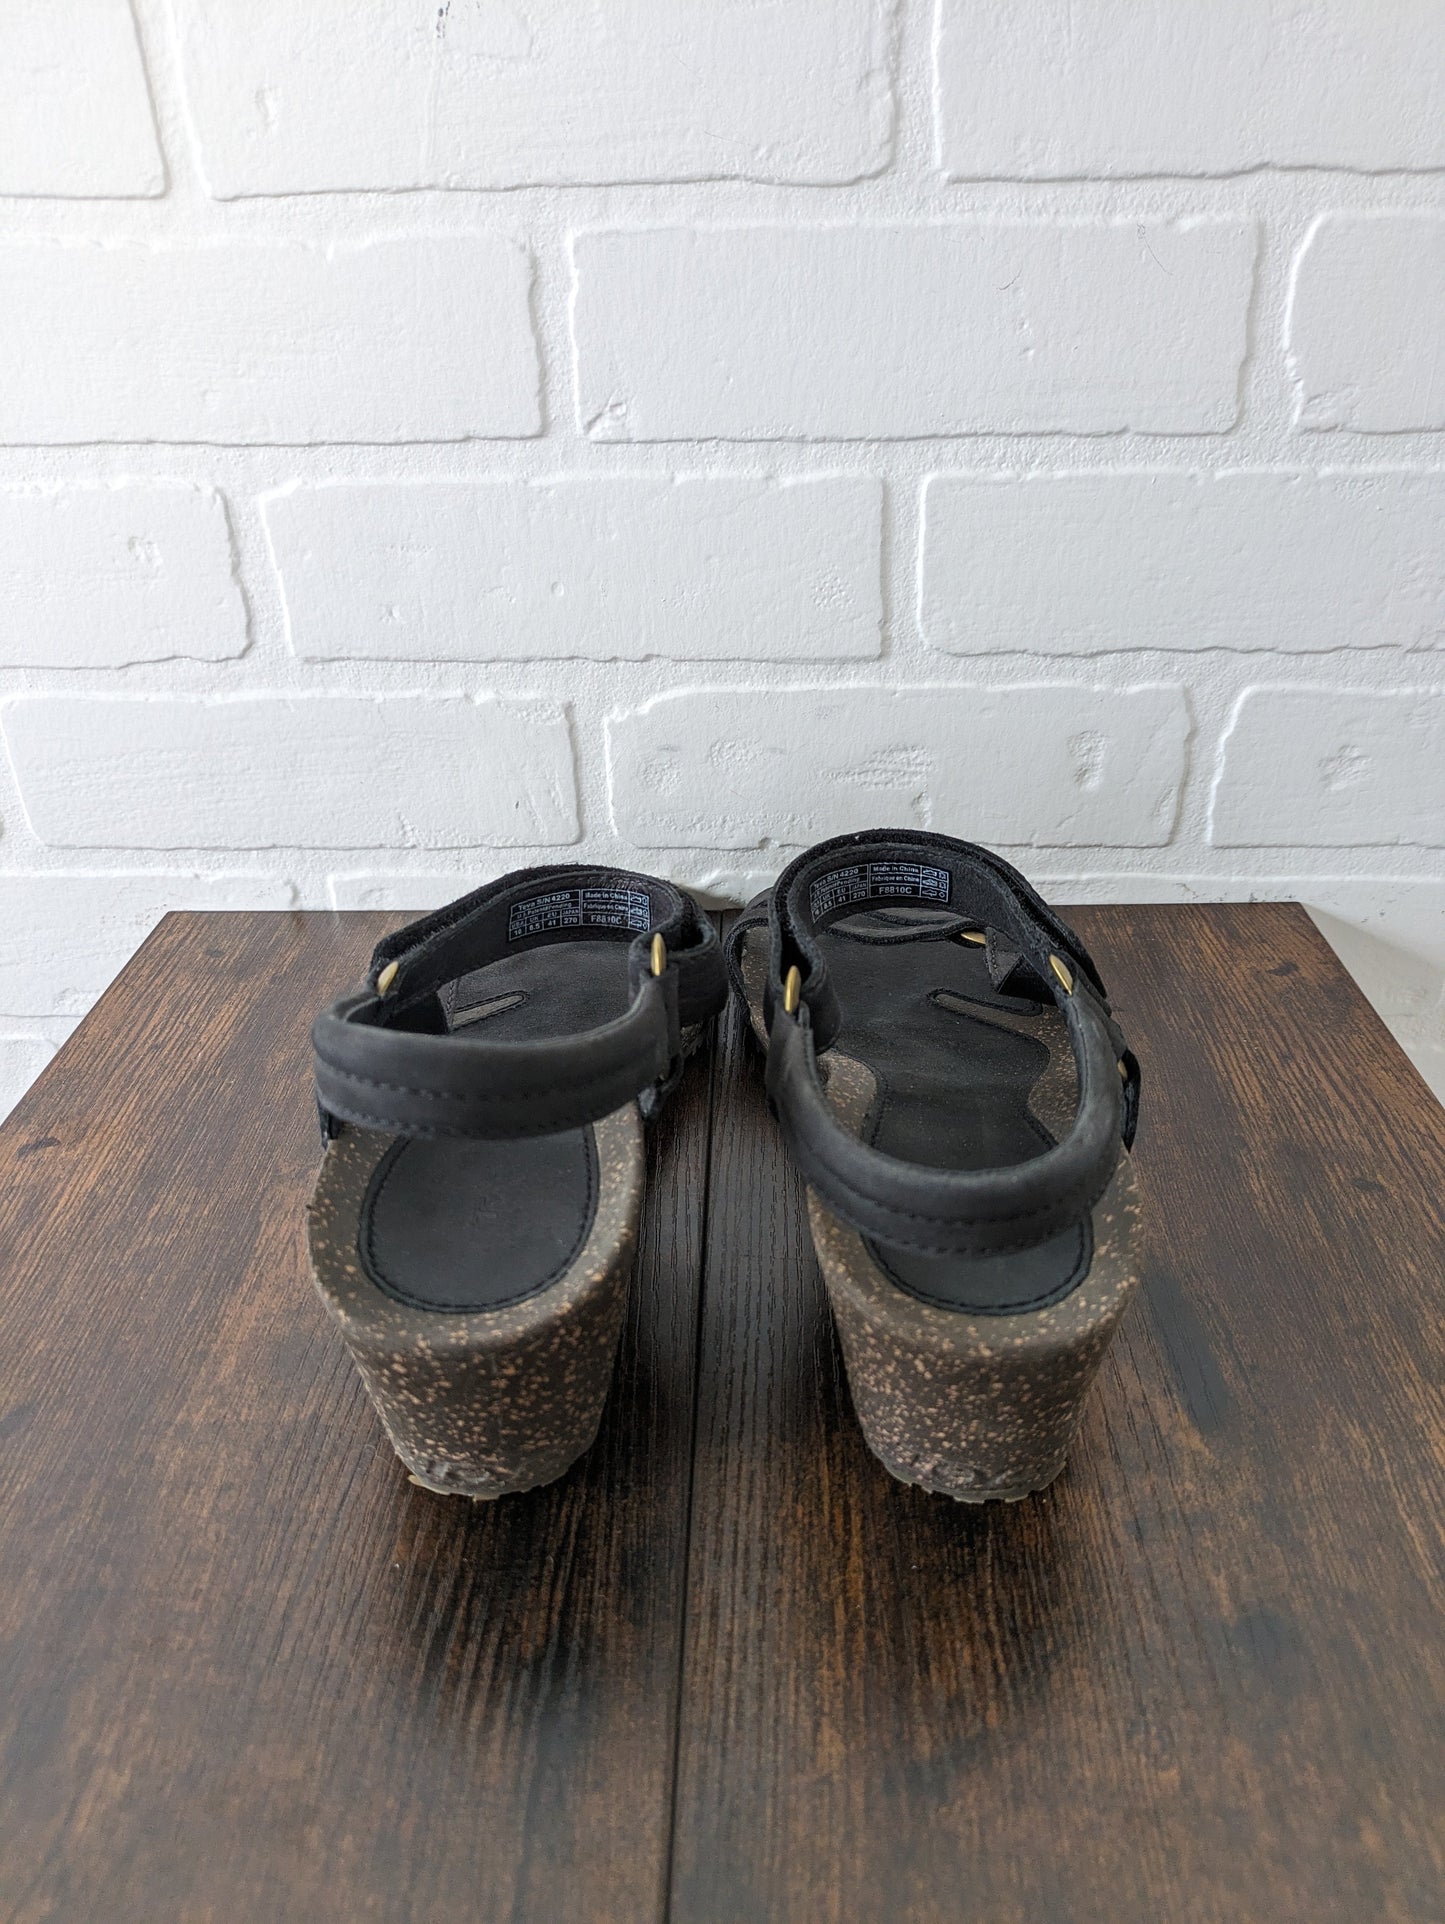 Sandals Heels Wedge By Teva  Size: 10